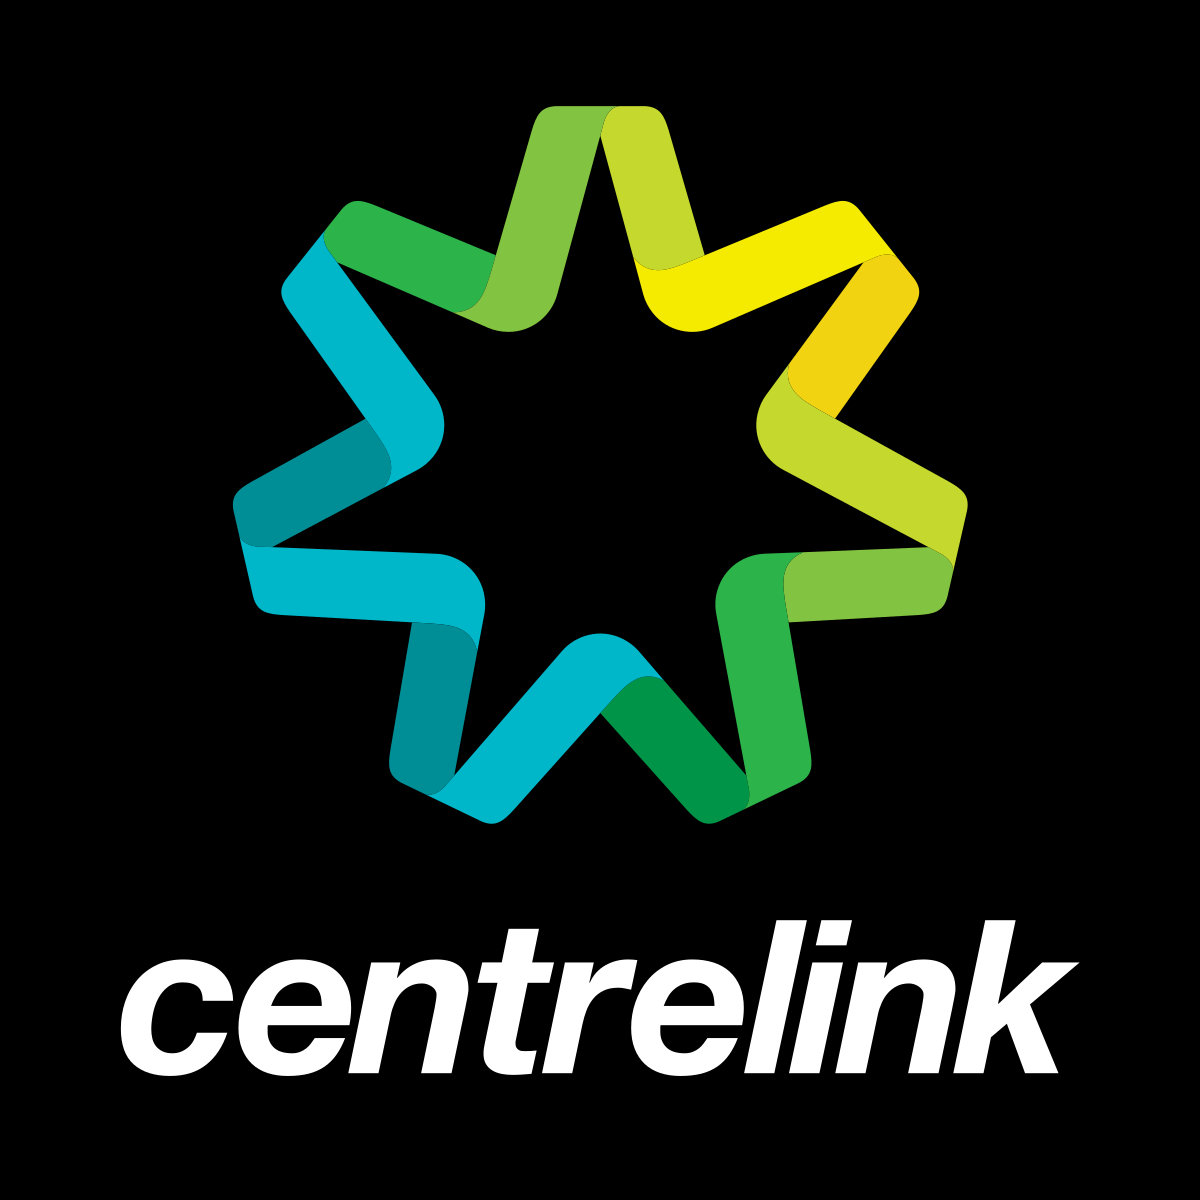 Centrelink_logo_2013-.svg